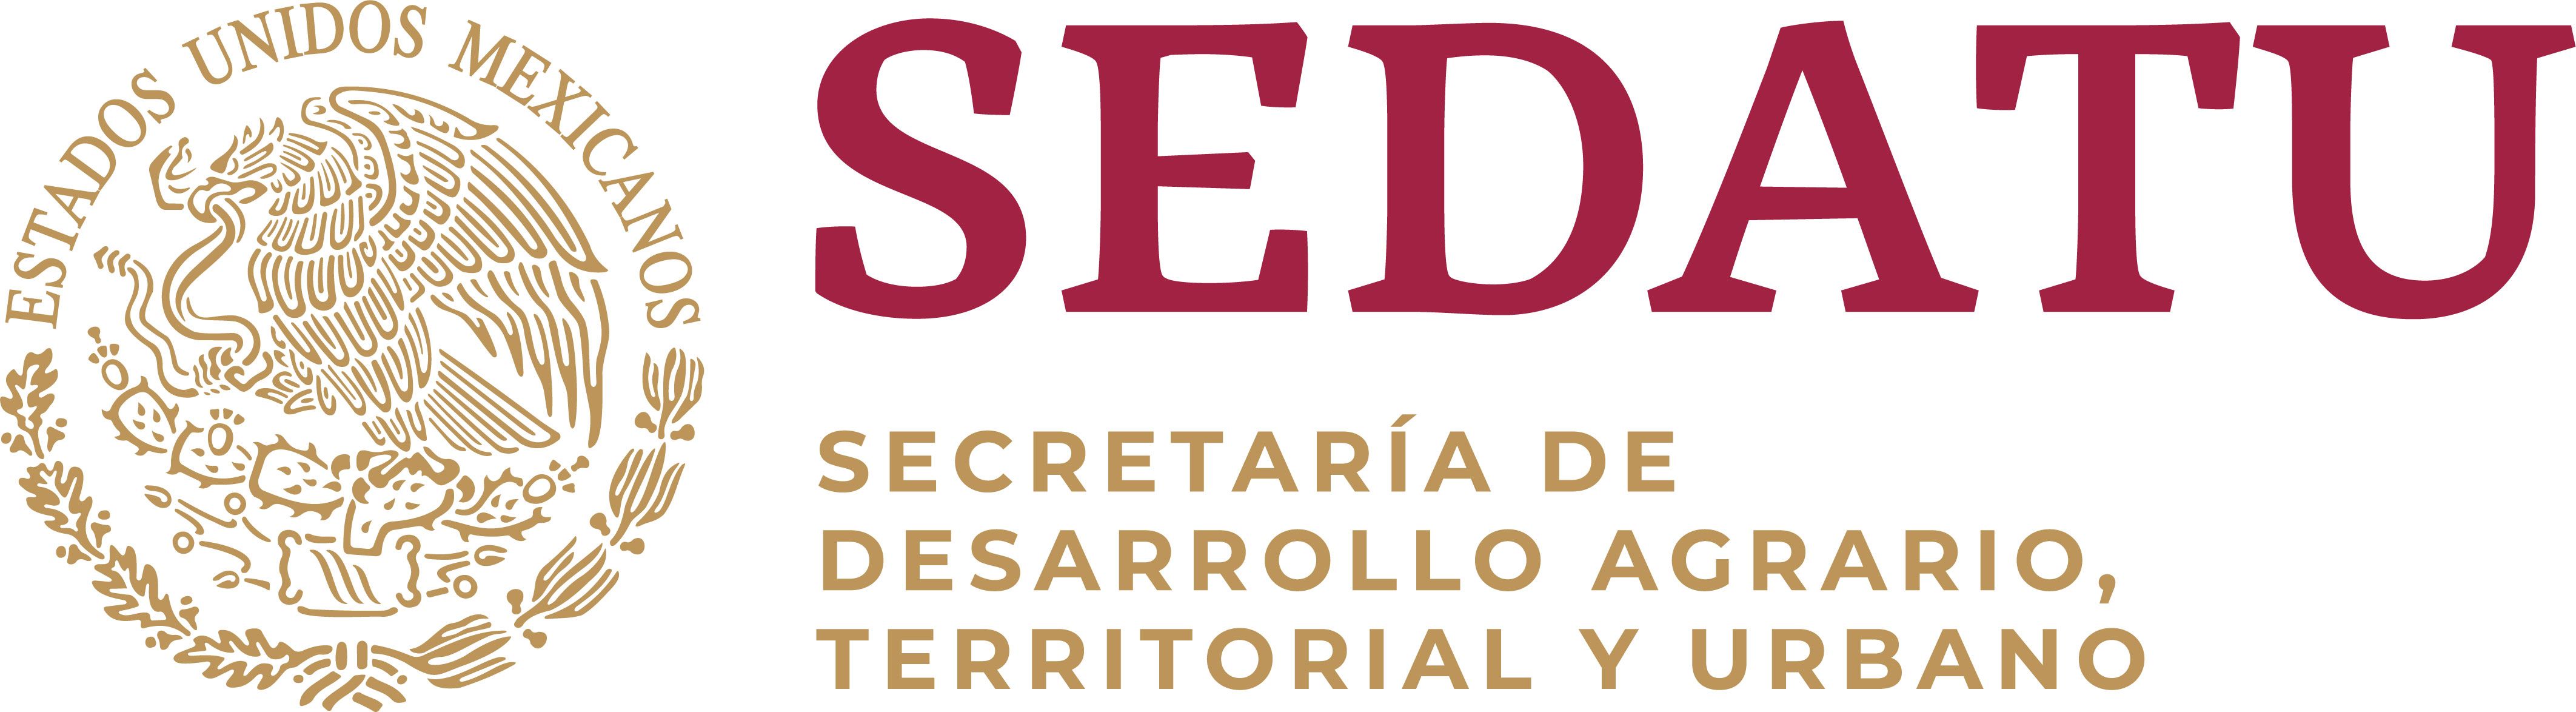 MEXICO - Secretariat of Agrarian, Territorial and Urban Development (SEDATU)